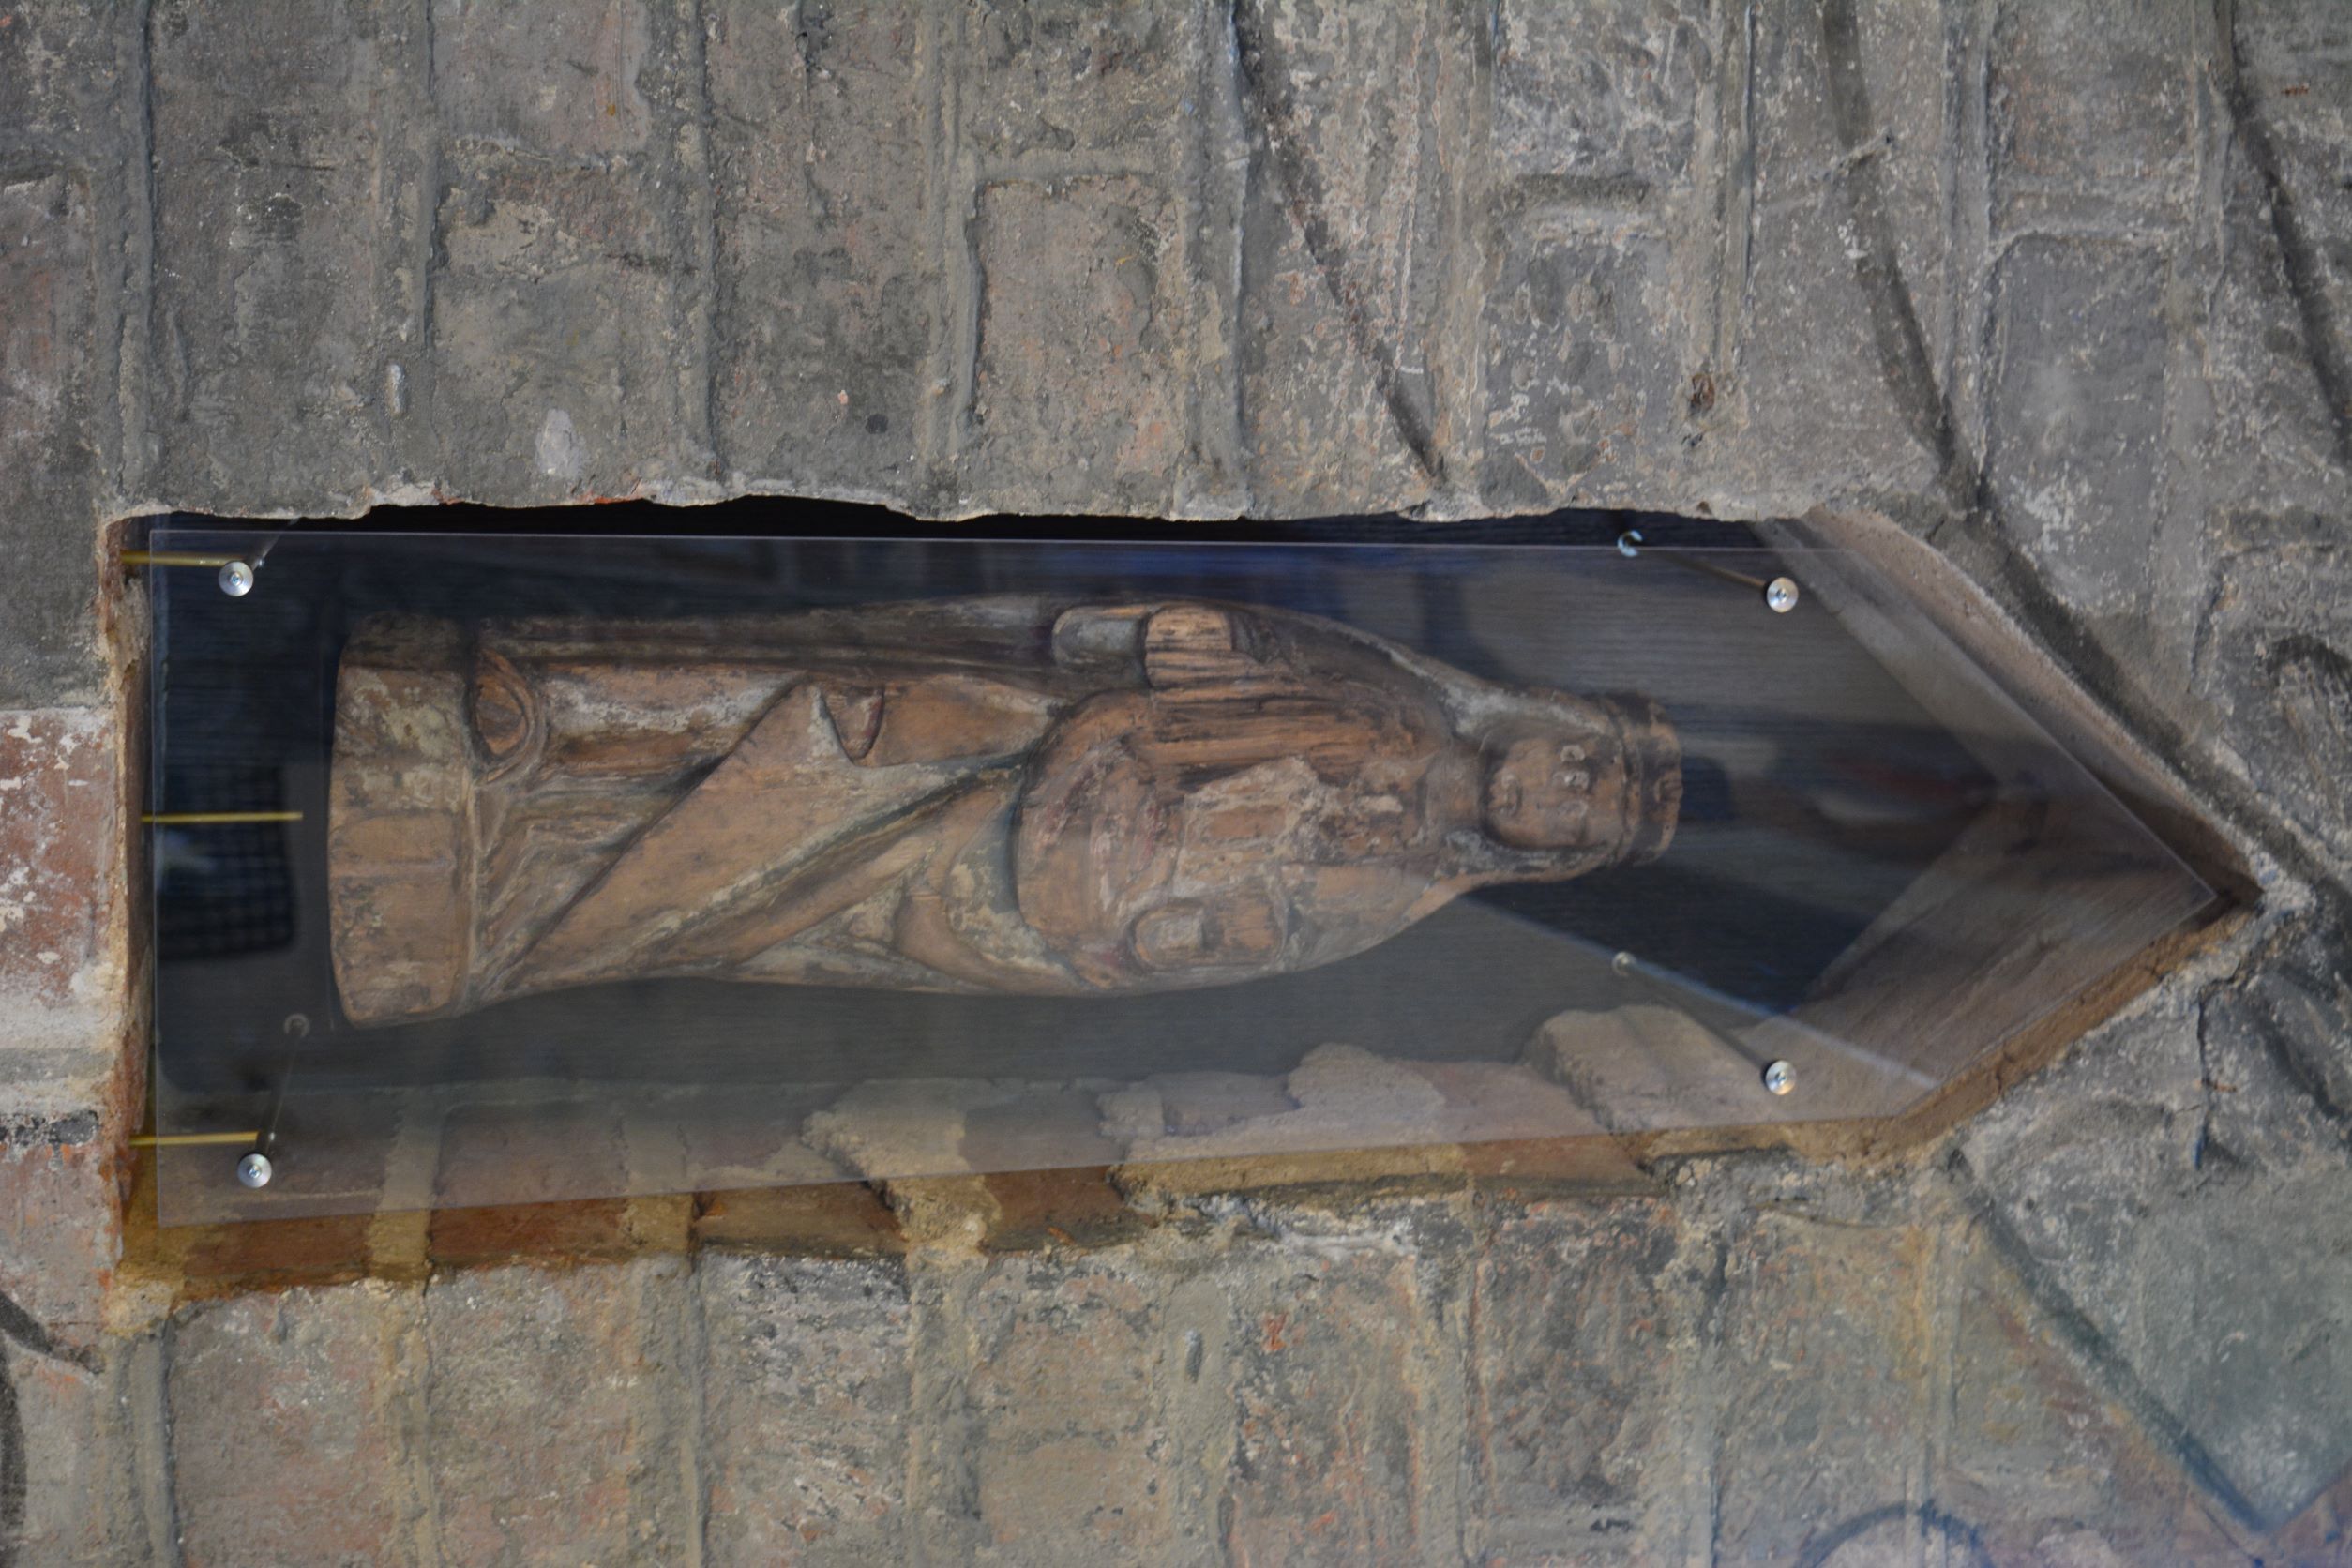 Tiilistä tehdyn pilarin syvennyksessä on pienehkö puinen patsas naishenkilöstä. Patsas on kulunut ja sen kädet puuttuvat.